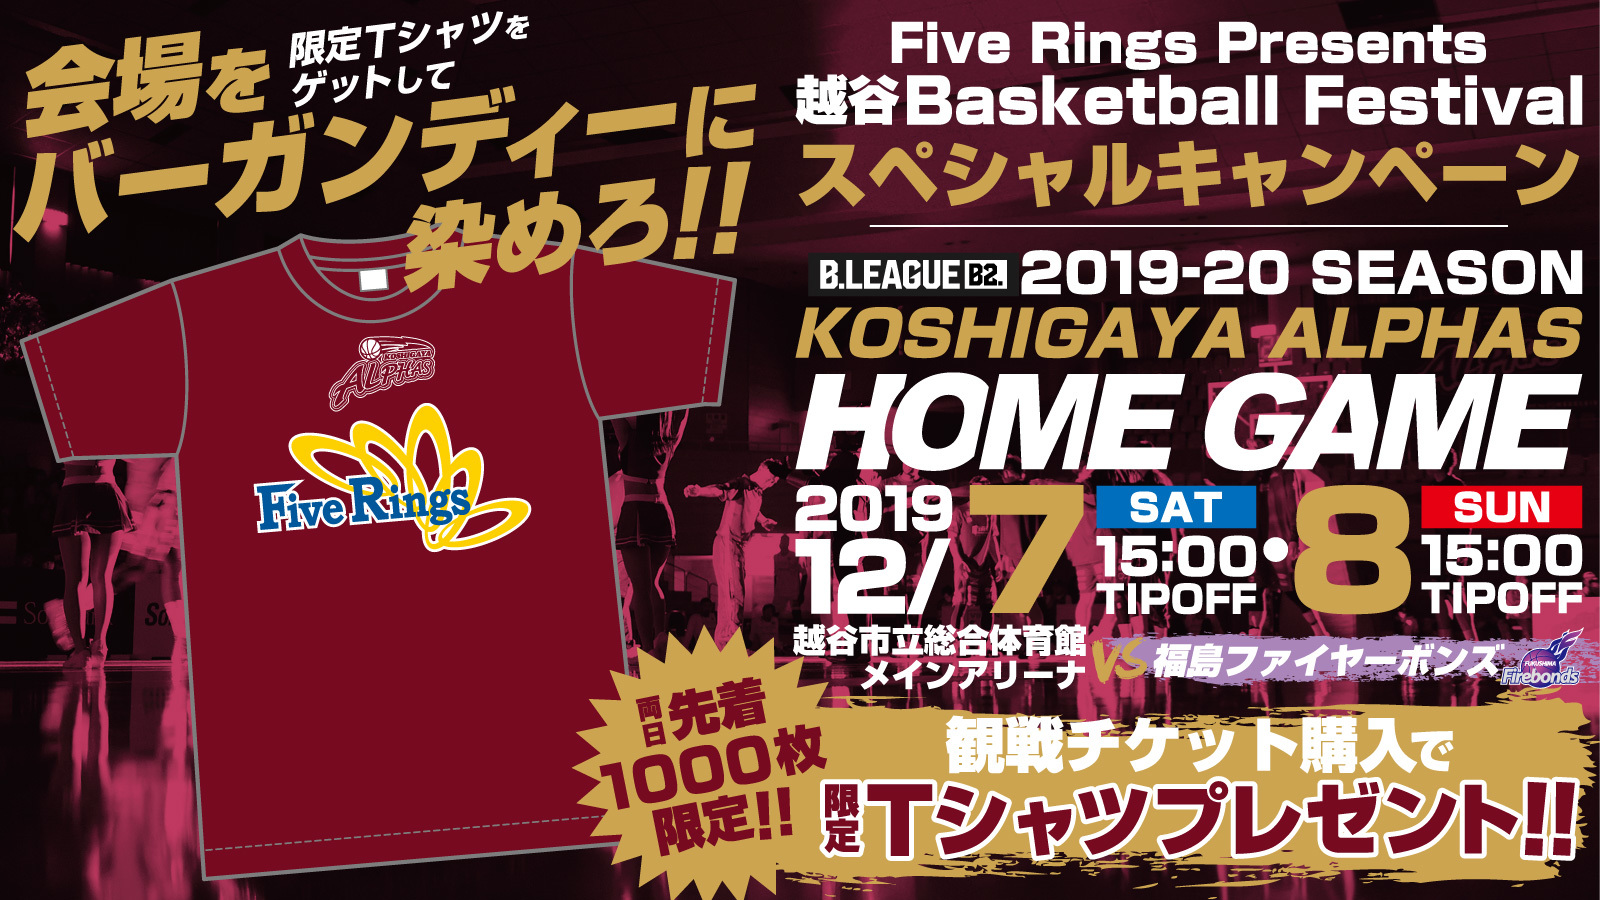 Five Rings Presents 越谷 Basketball Festival スペシャルキャンペーンのお知らせ